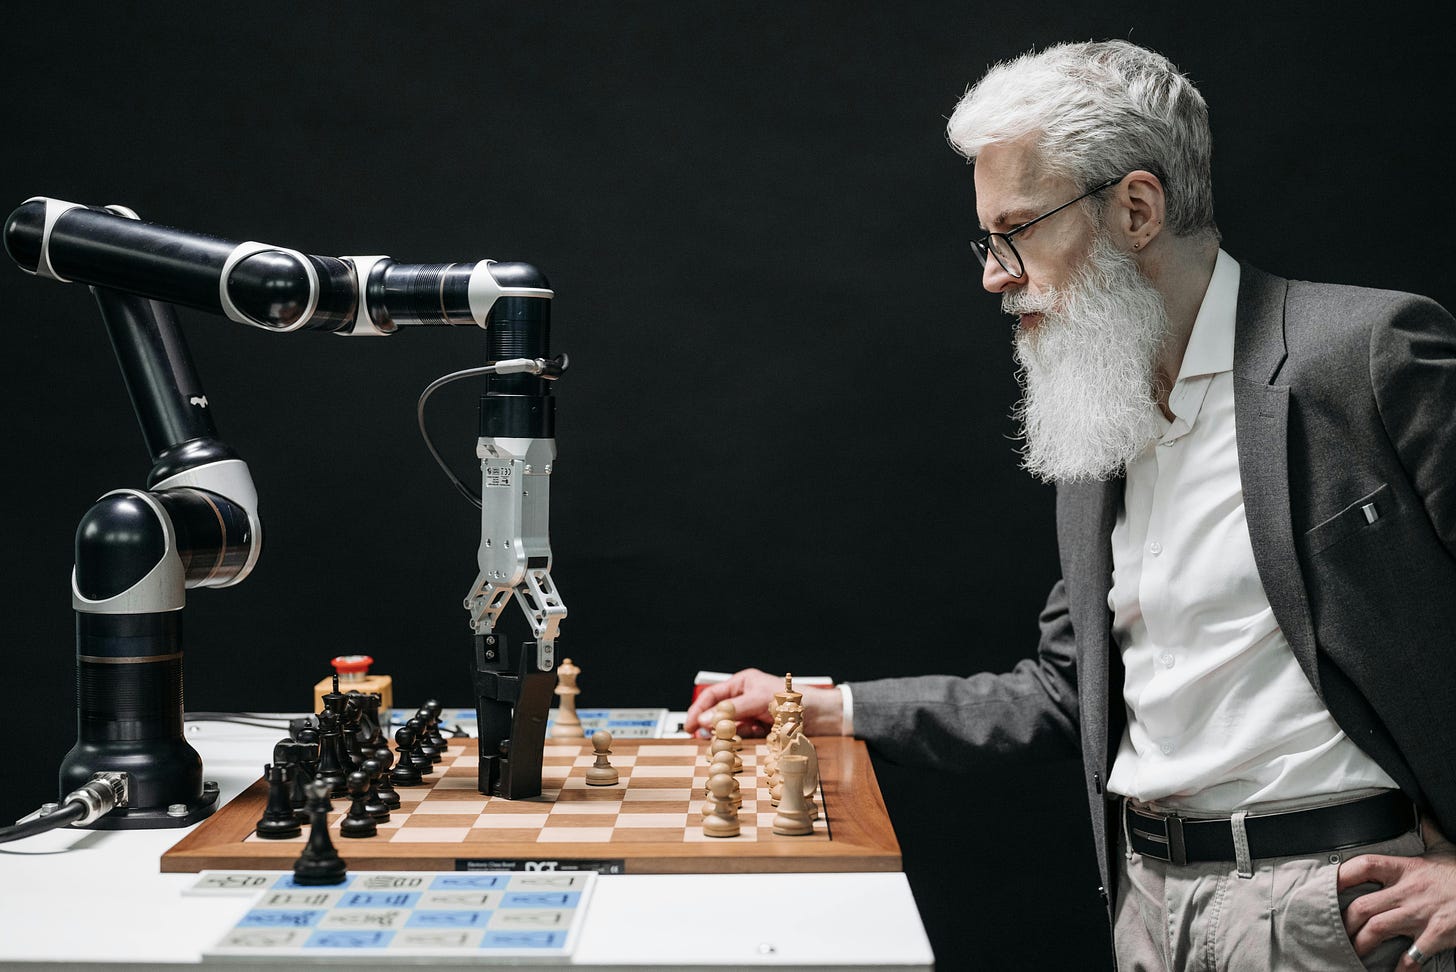 Machine vs. man playing chess